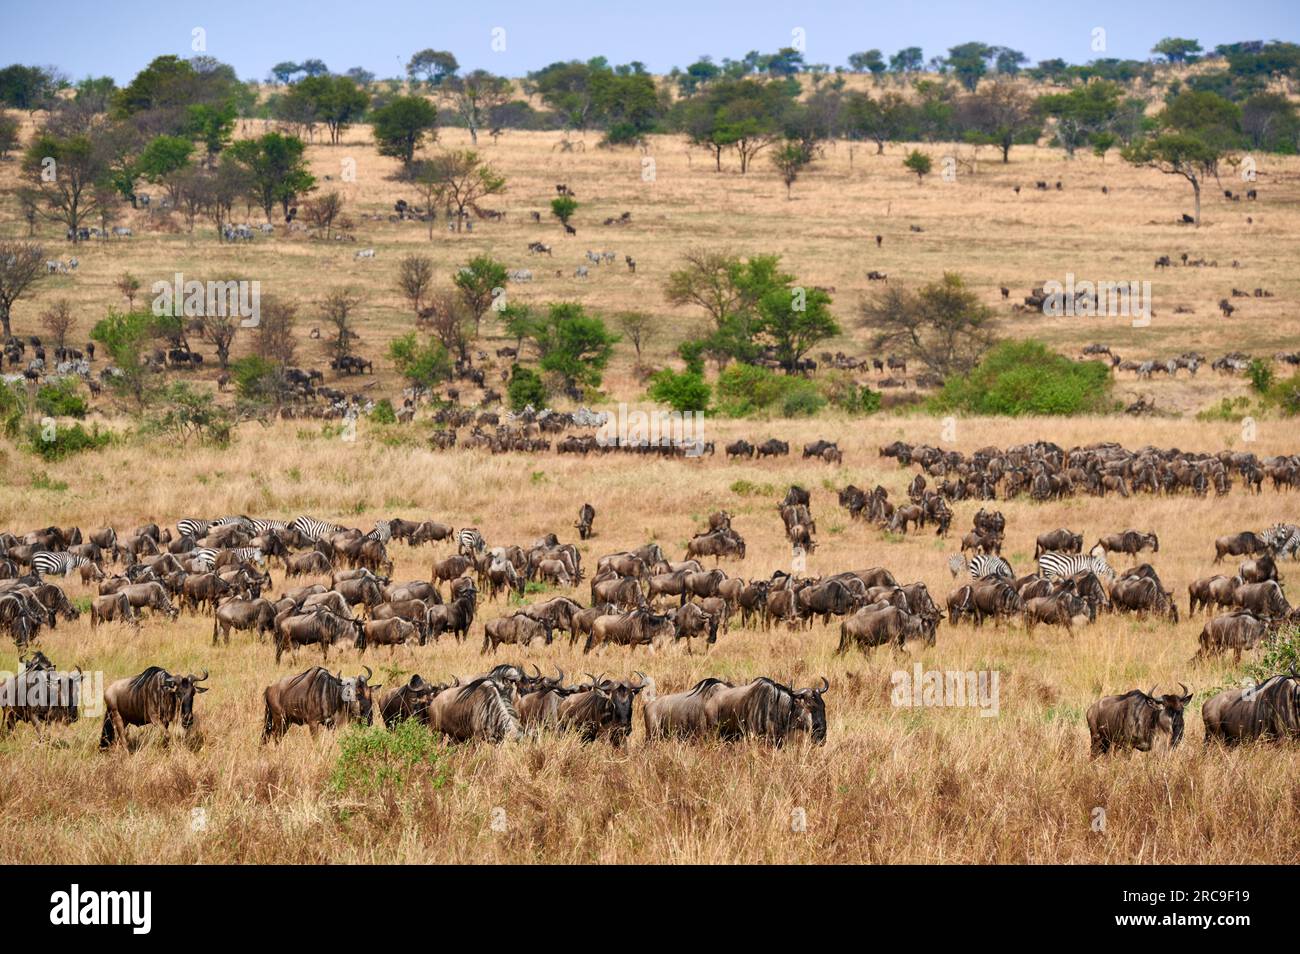 Grosse Herde Weißbartgnus (Connochaetes mearnsi) und Zebras auf der grossen Migration durch den Serengeti National Park, Tansania, Afrika |huge herd o Stock Photo